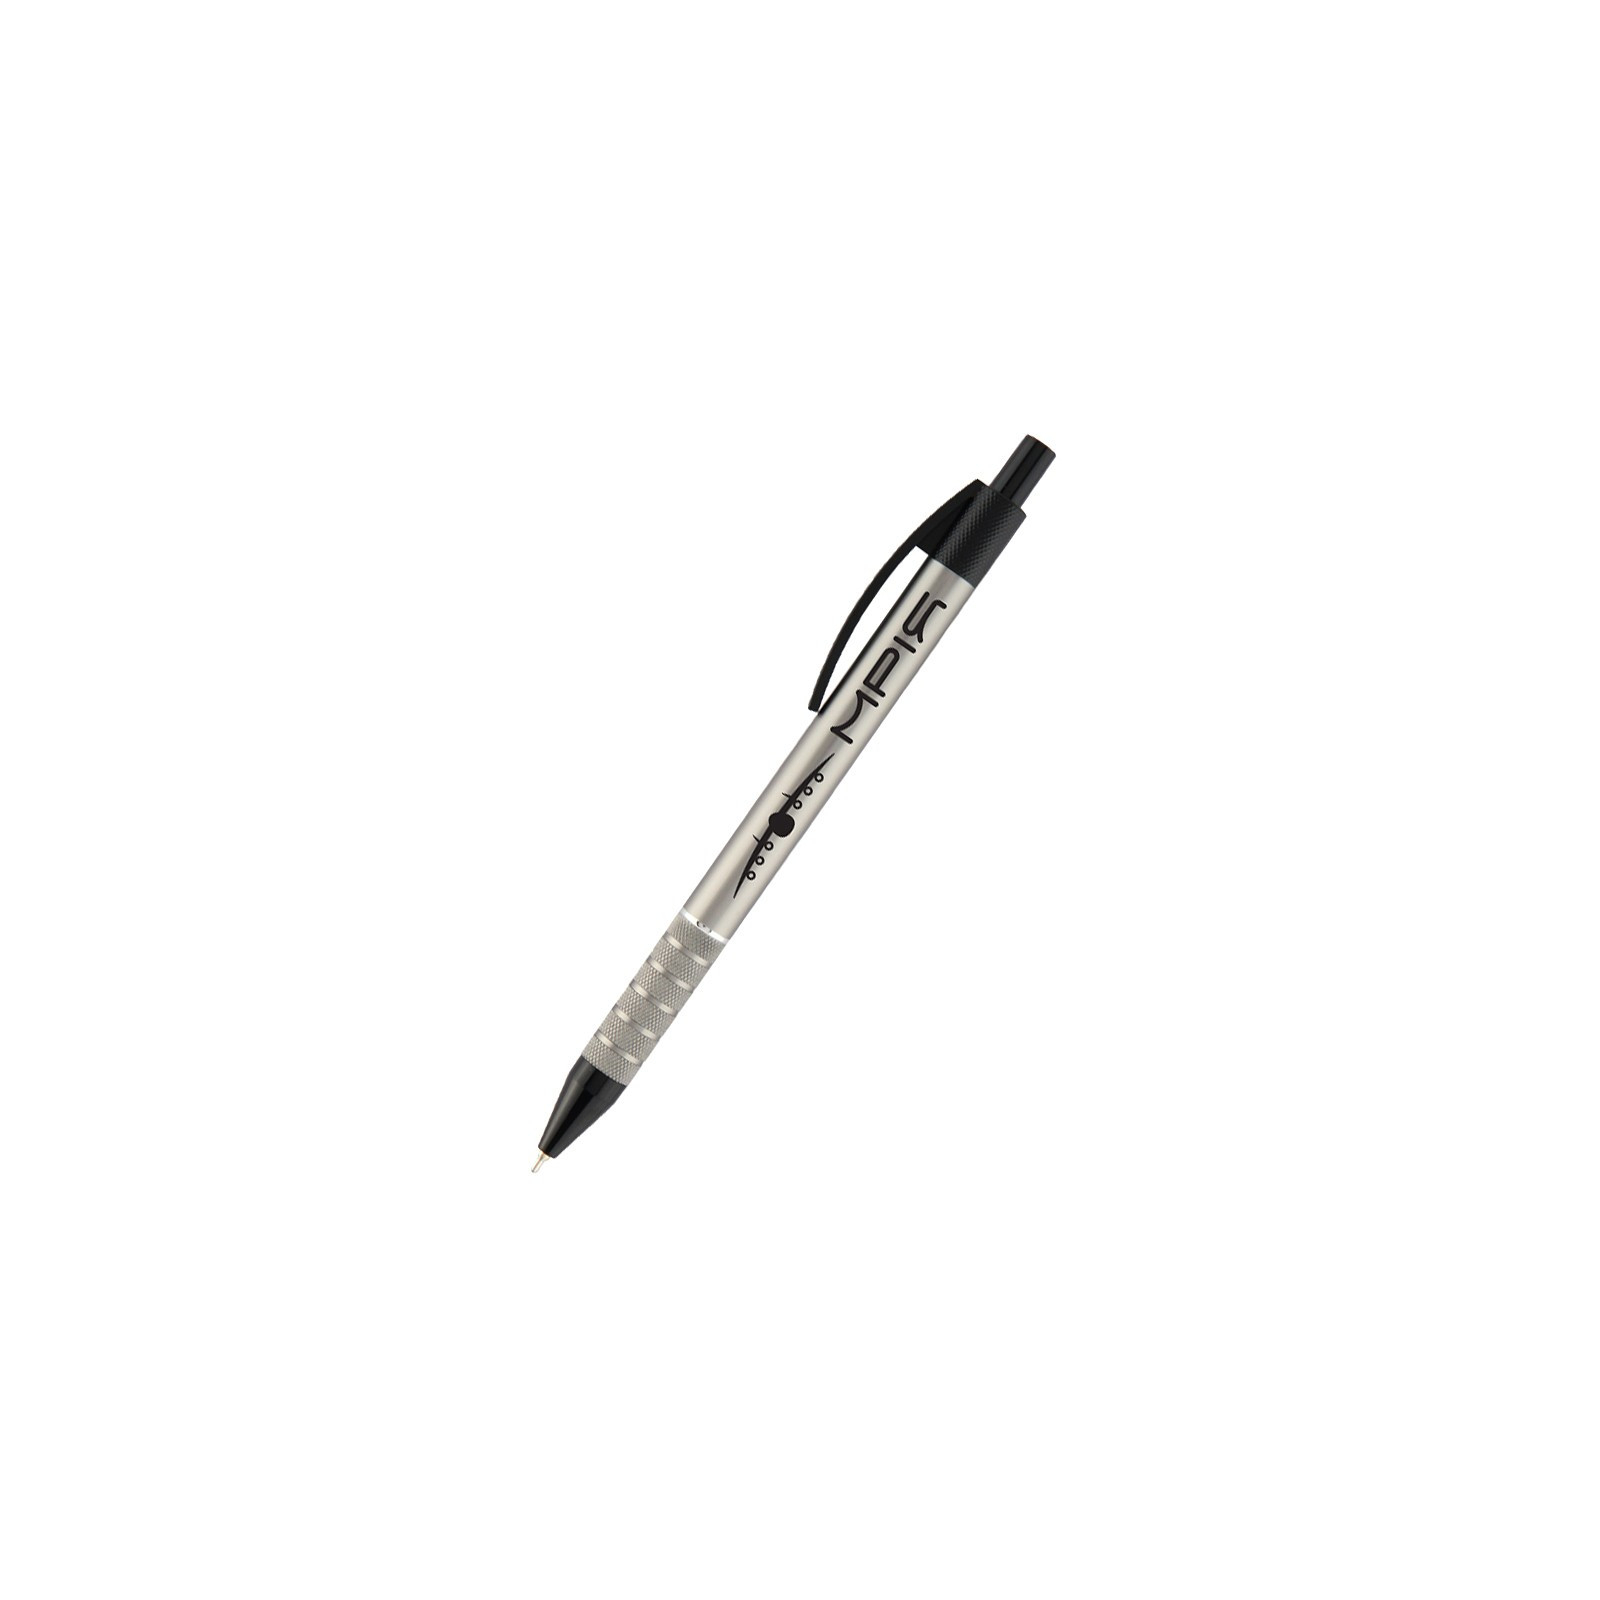 Ручка масляная Axent автоматическая Prestige Мрия, 0.7 мм, синяя (AB1086-10-02)